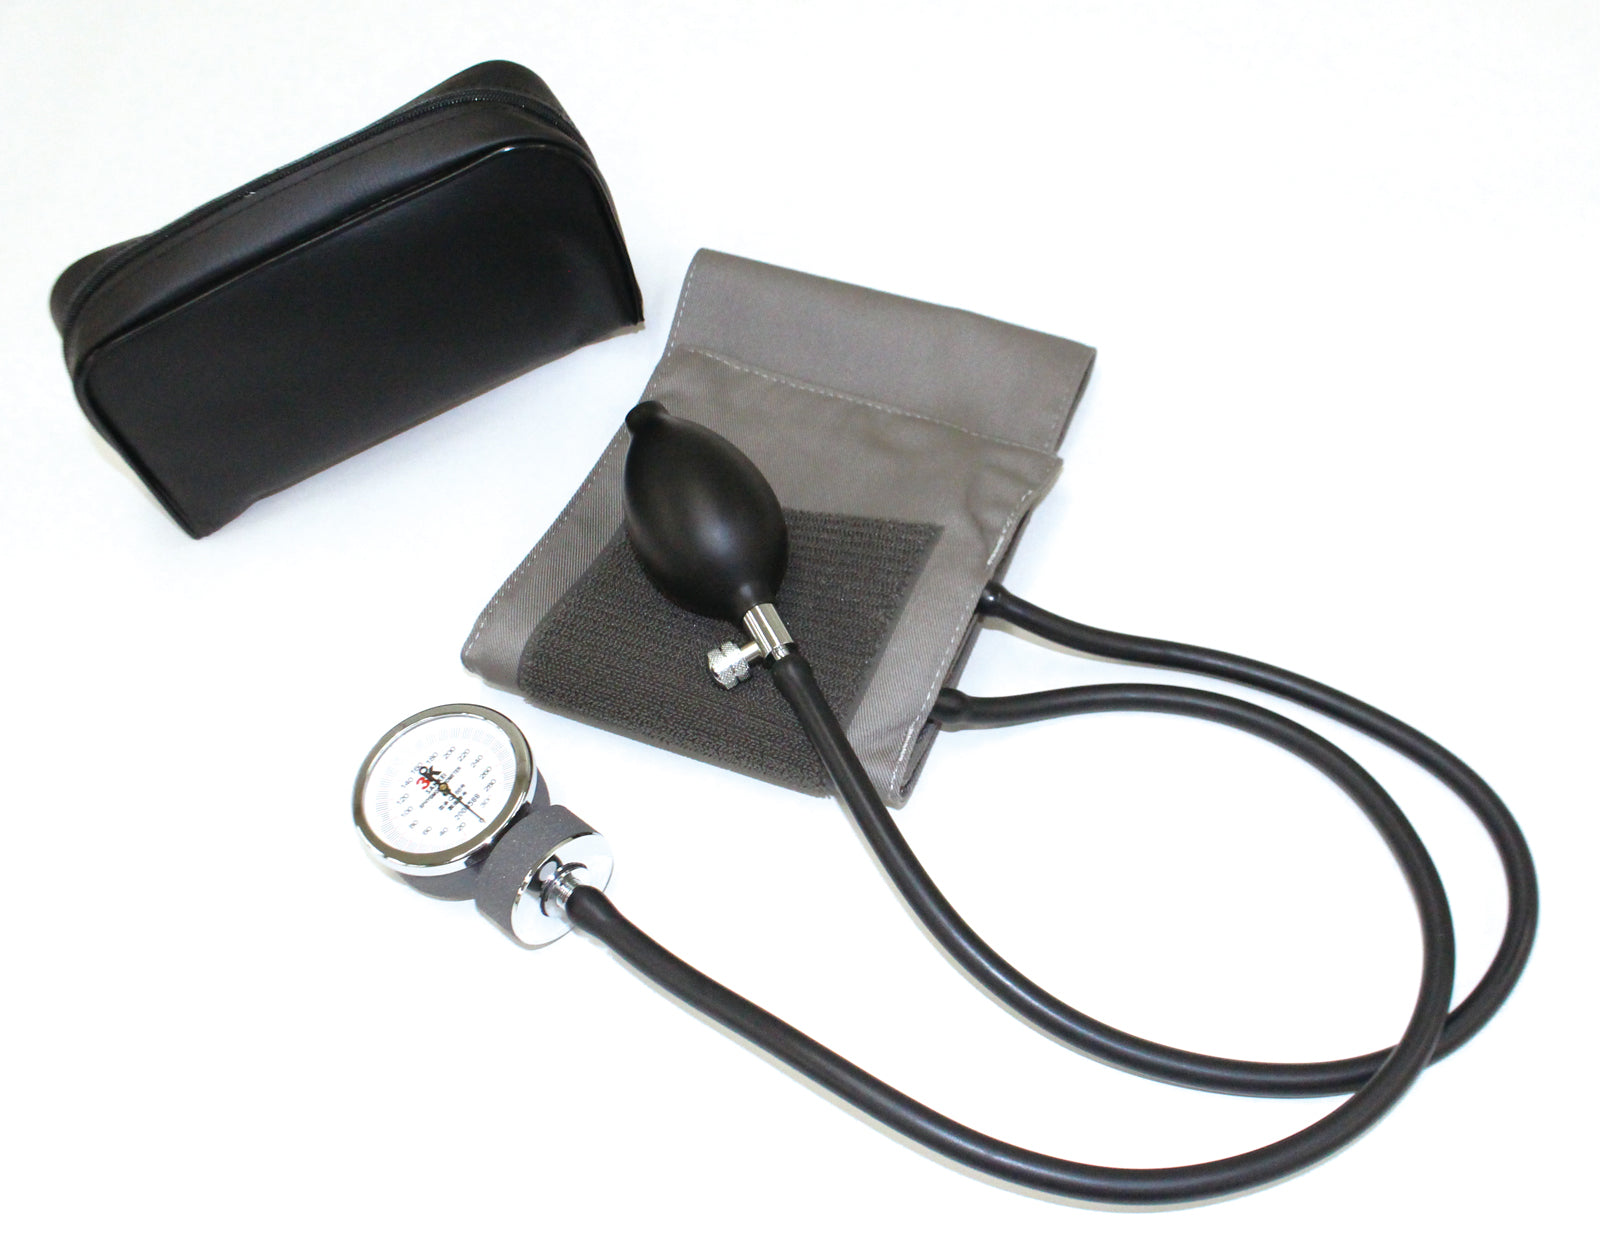 アネロイド型血圧計Ⅱ